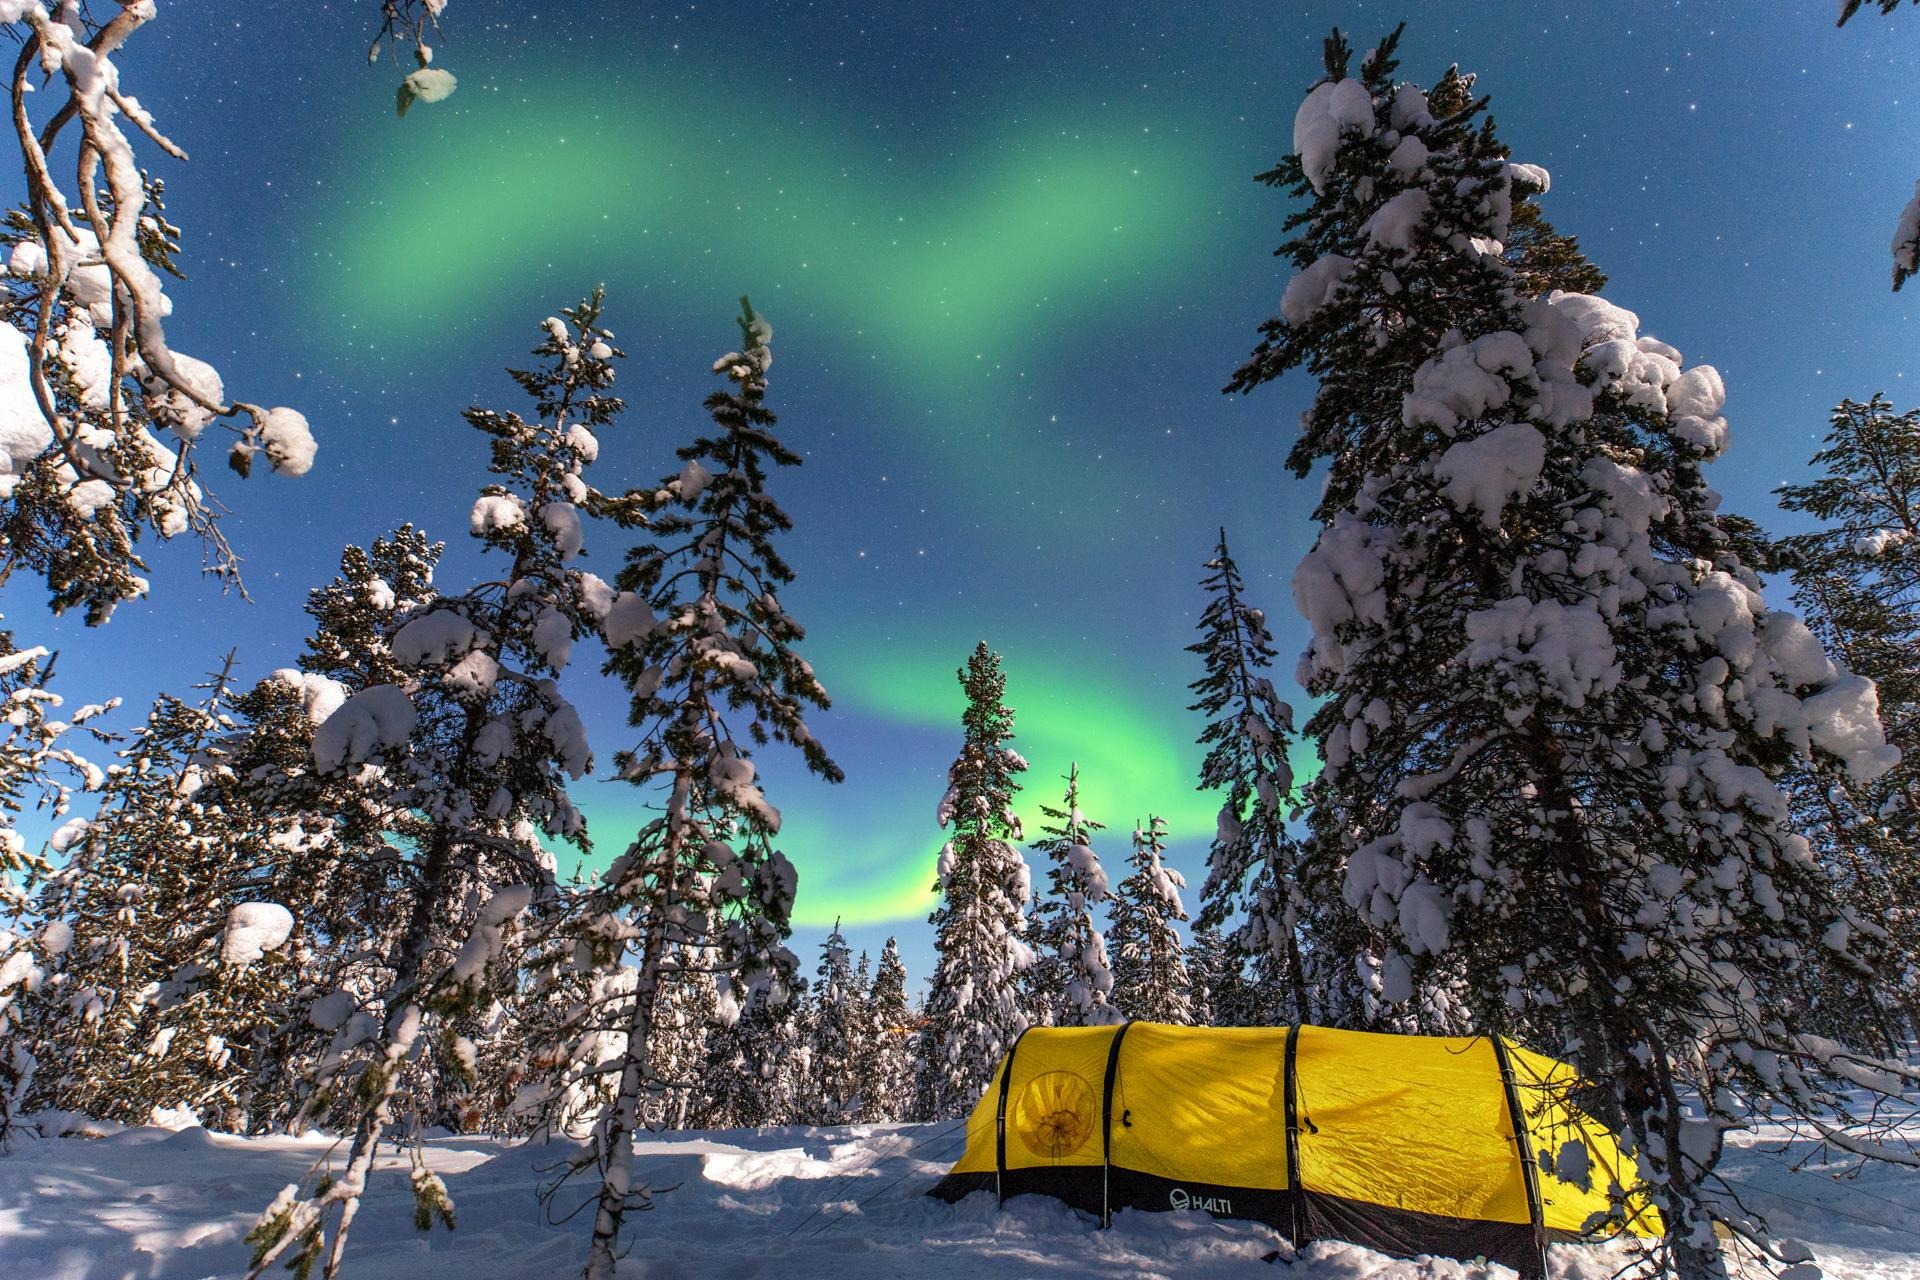 finland, finnish lappland, finnland, snow, tent, tent below aurora, tent in woods, zelt unter nordlchtern, aurora, northern lights,